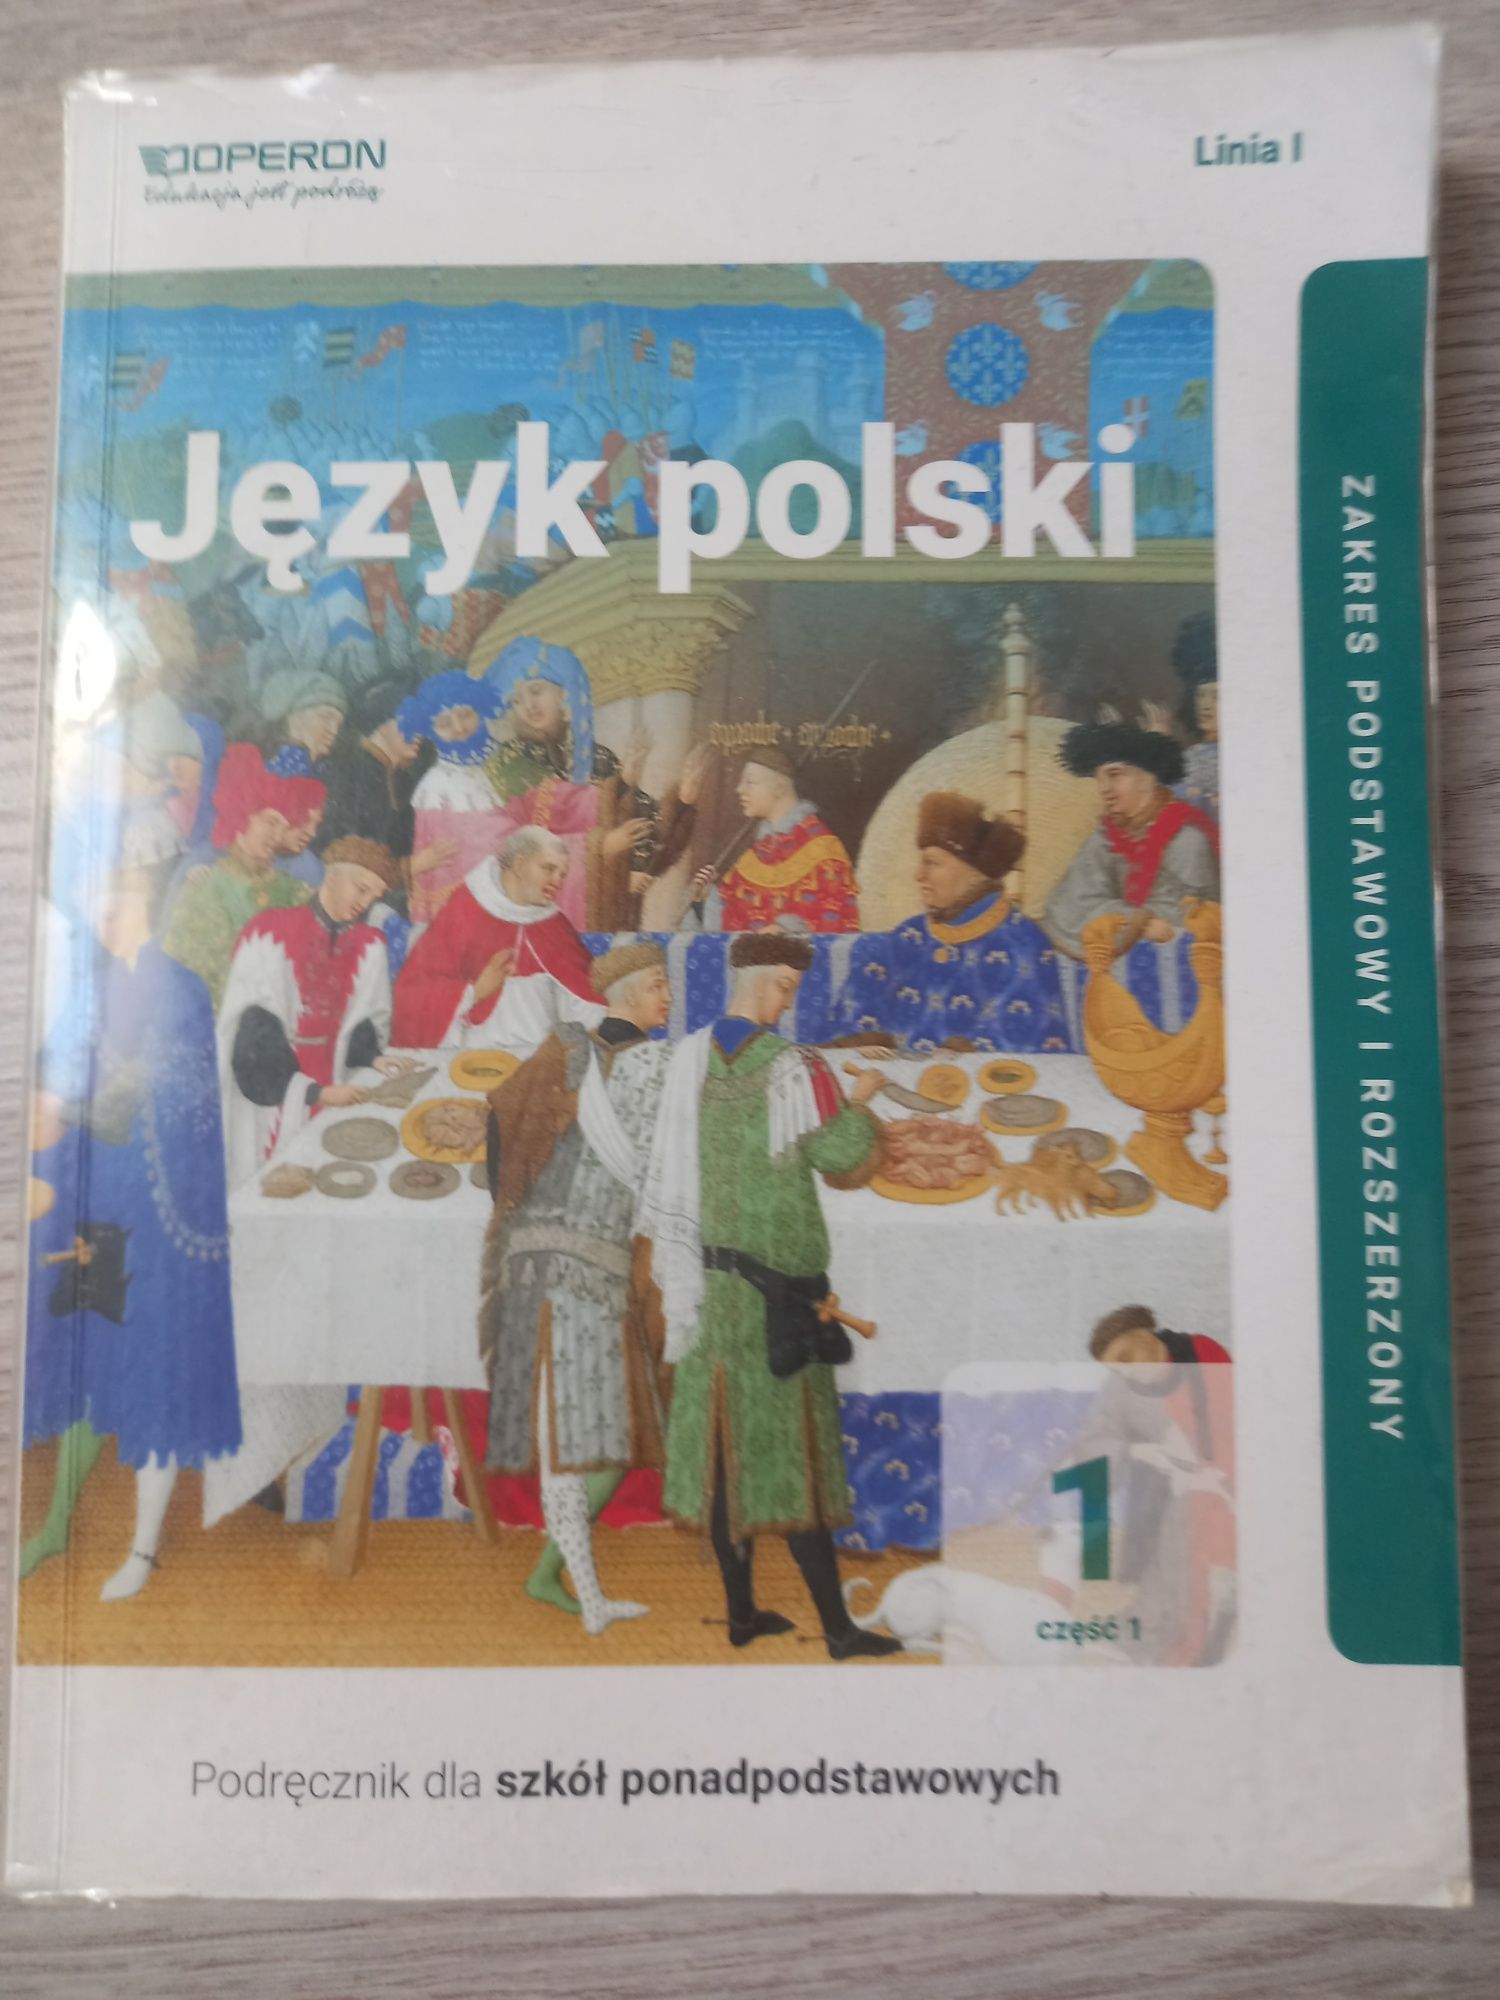 SPRZEDAM!! Książke "Język polski"